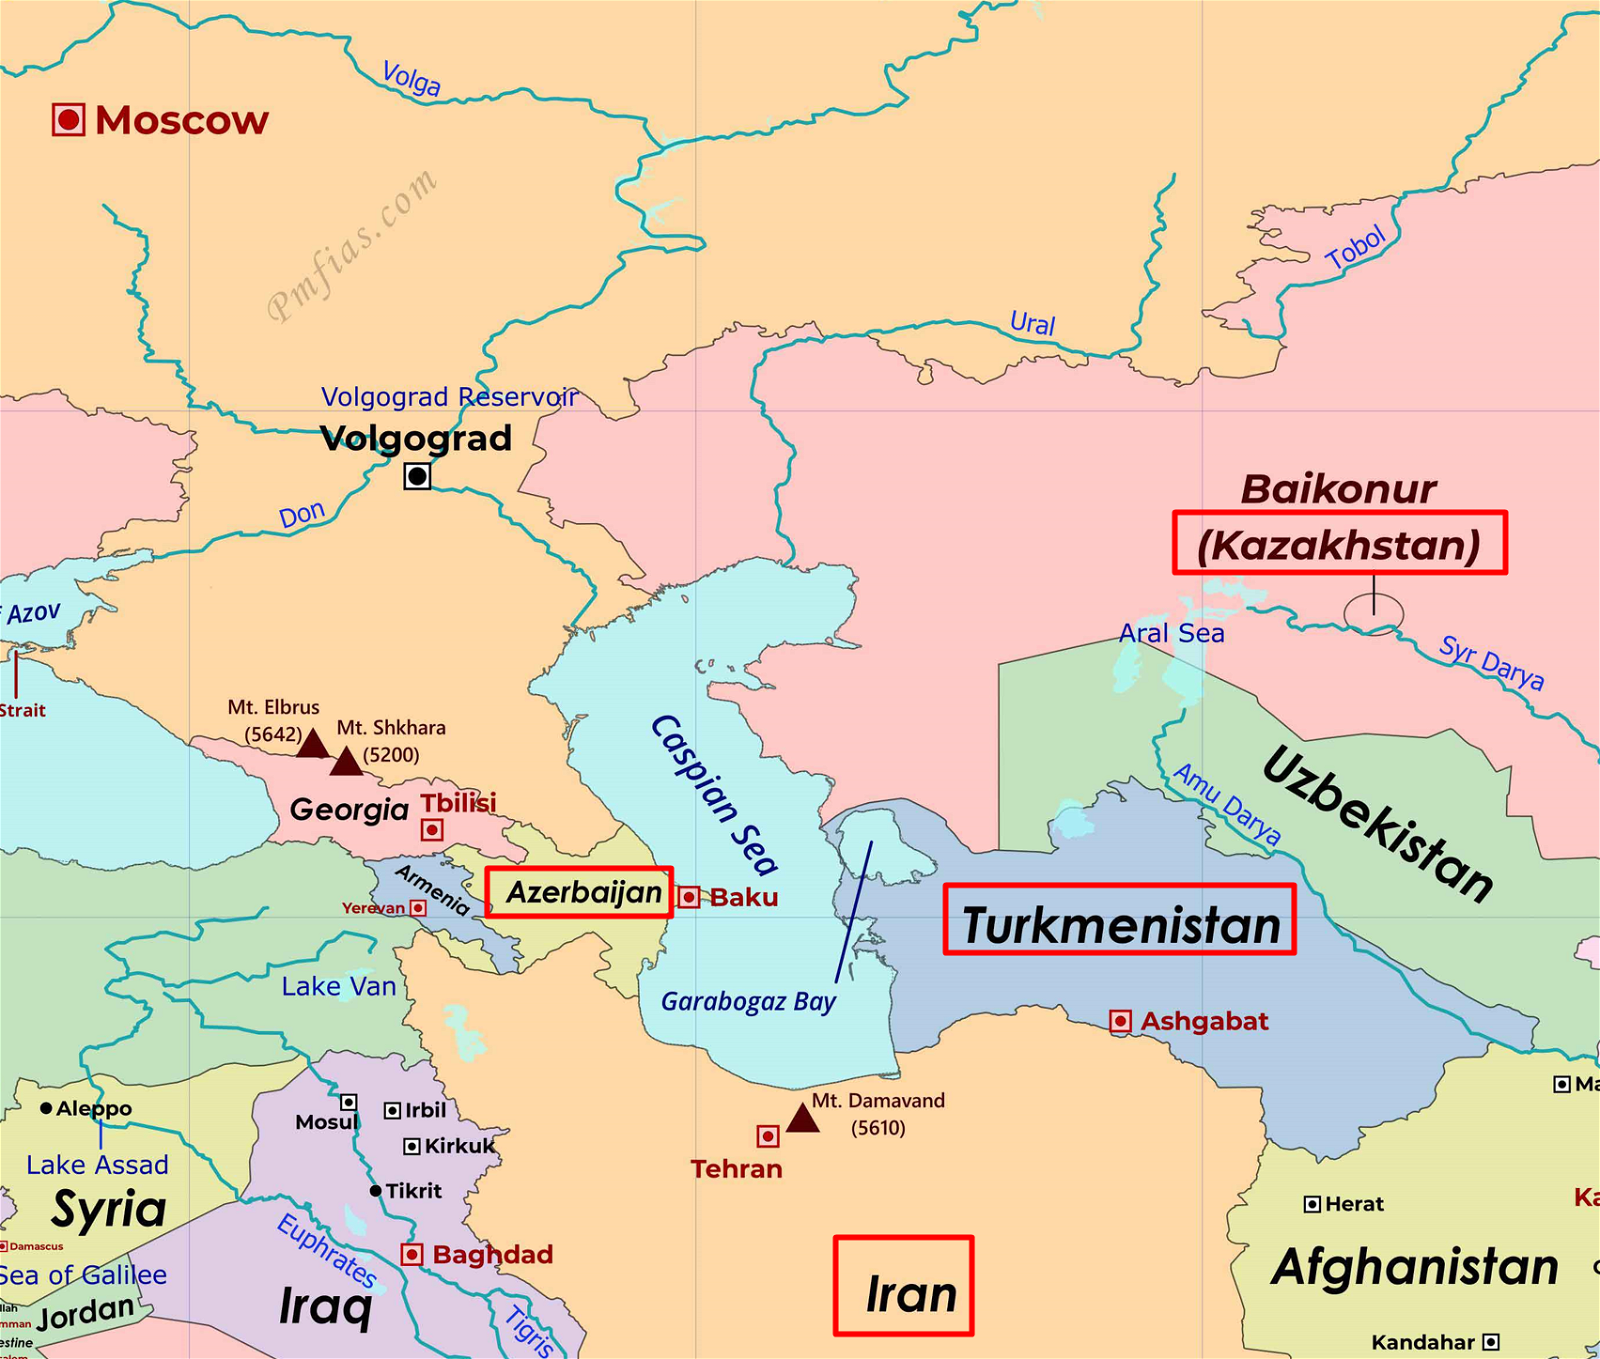 Countries surrounding Caspian Sea